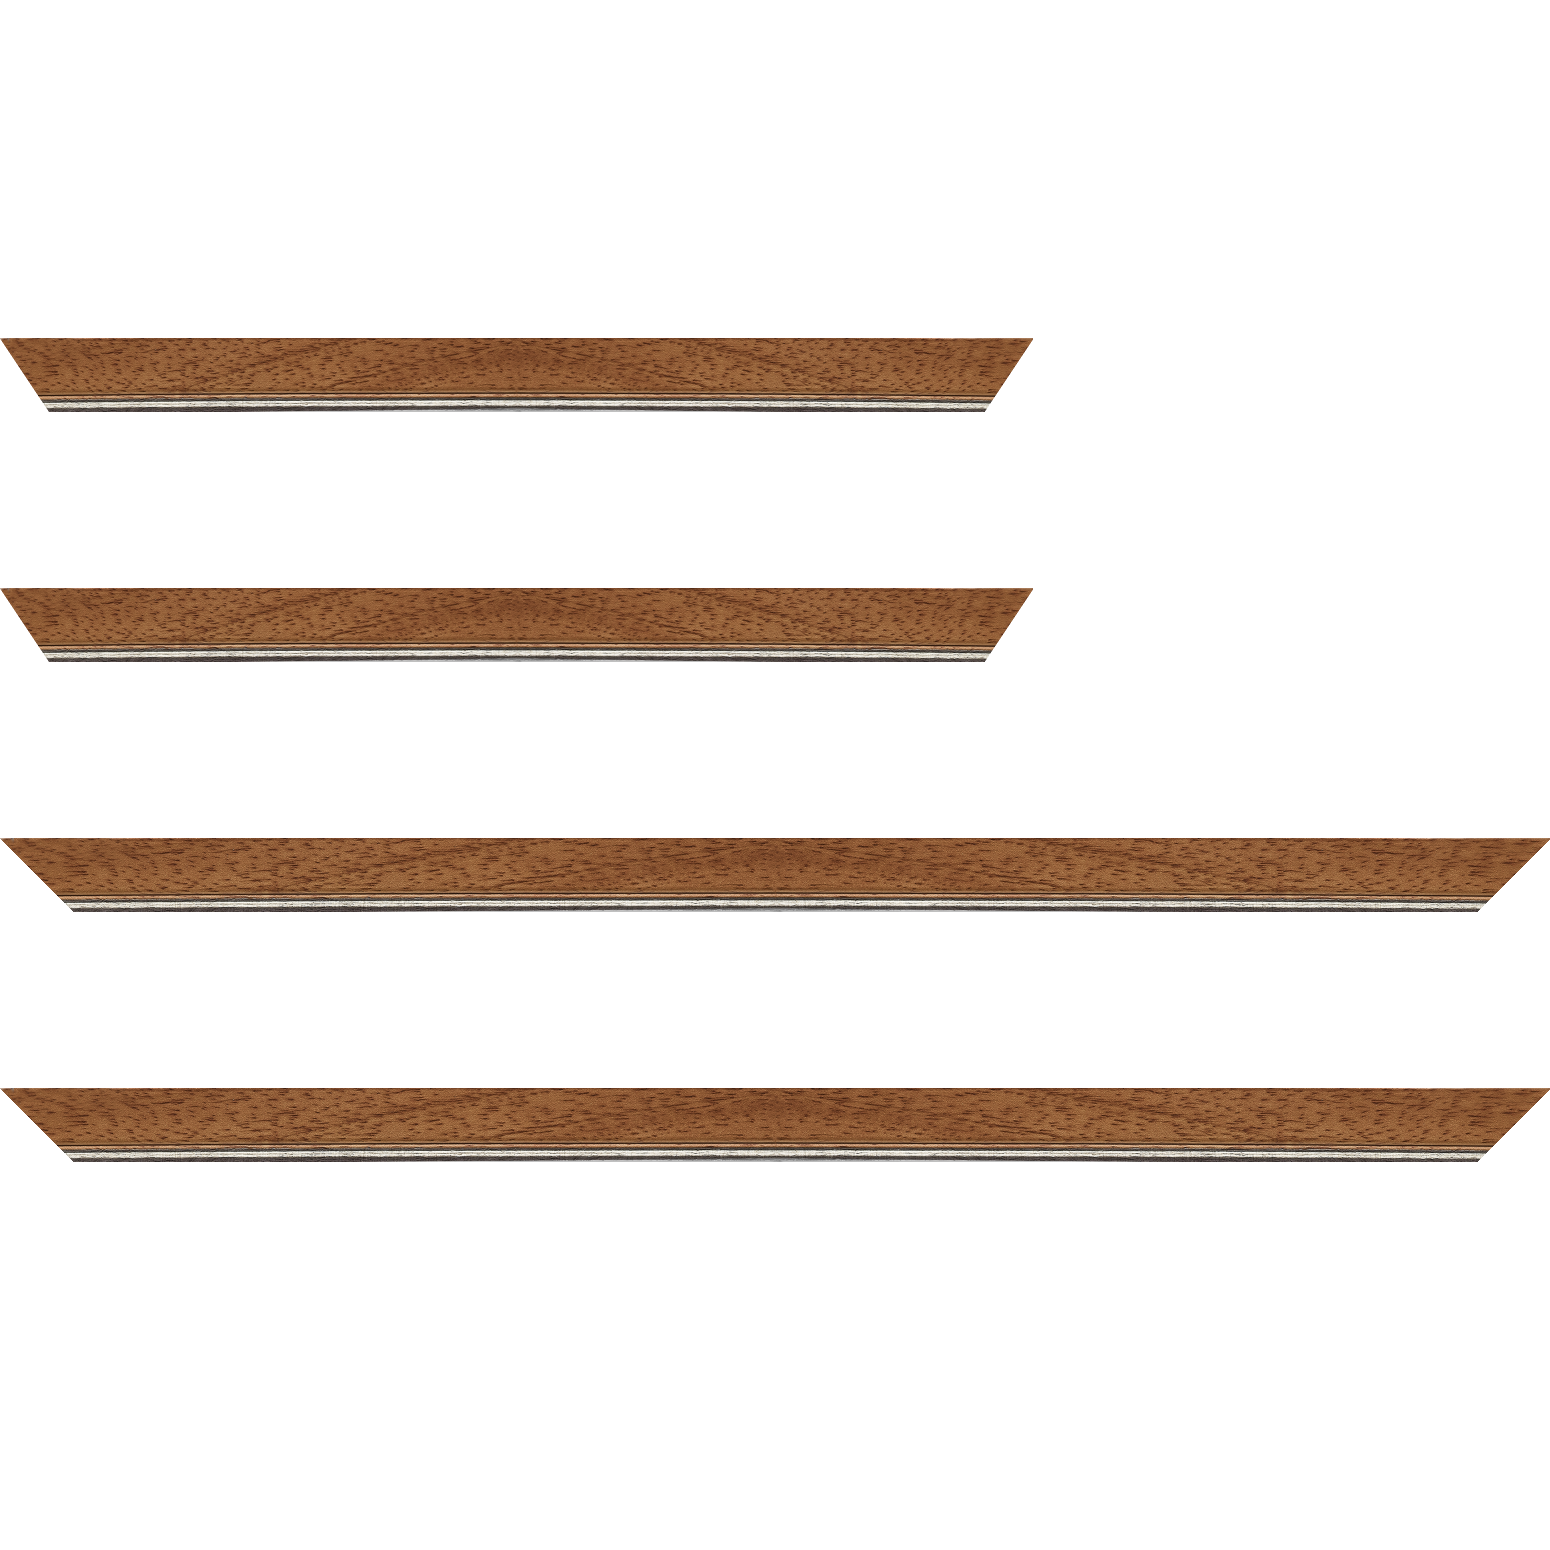 Baguette bois profil plat largeur 2.5cm couleur marron ton bois filet argent - 70x100